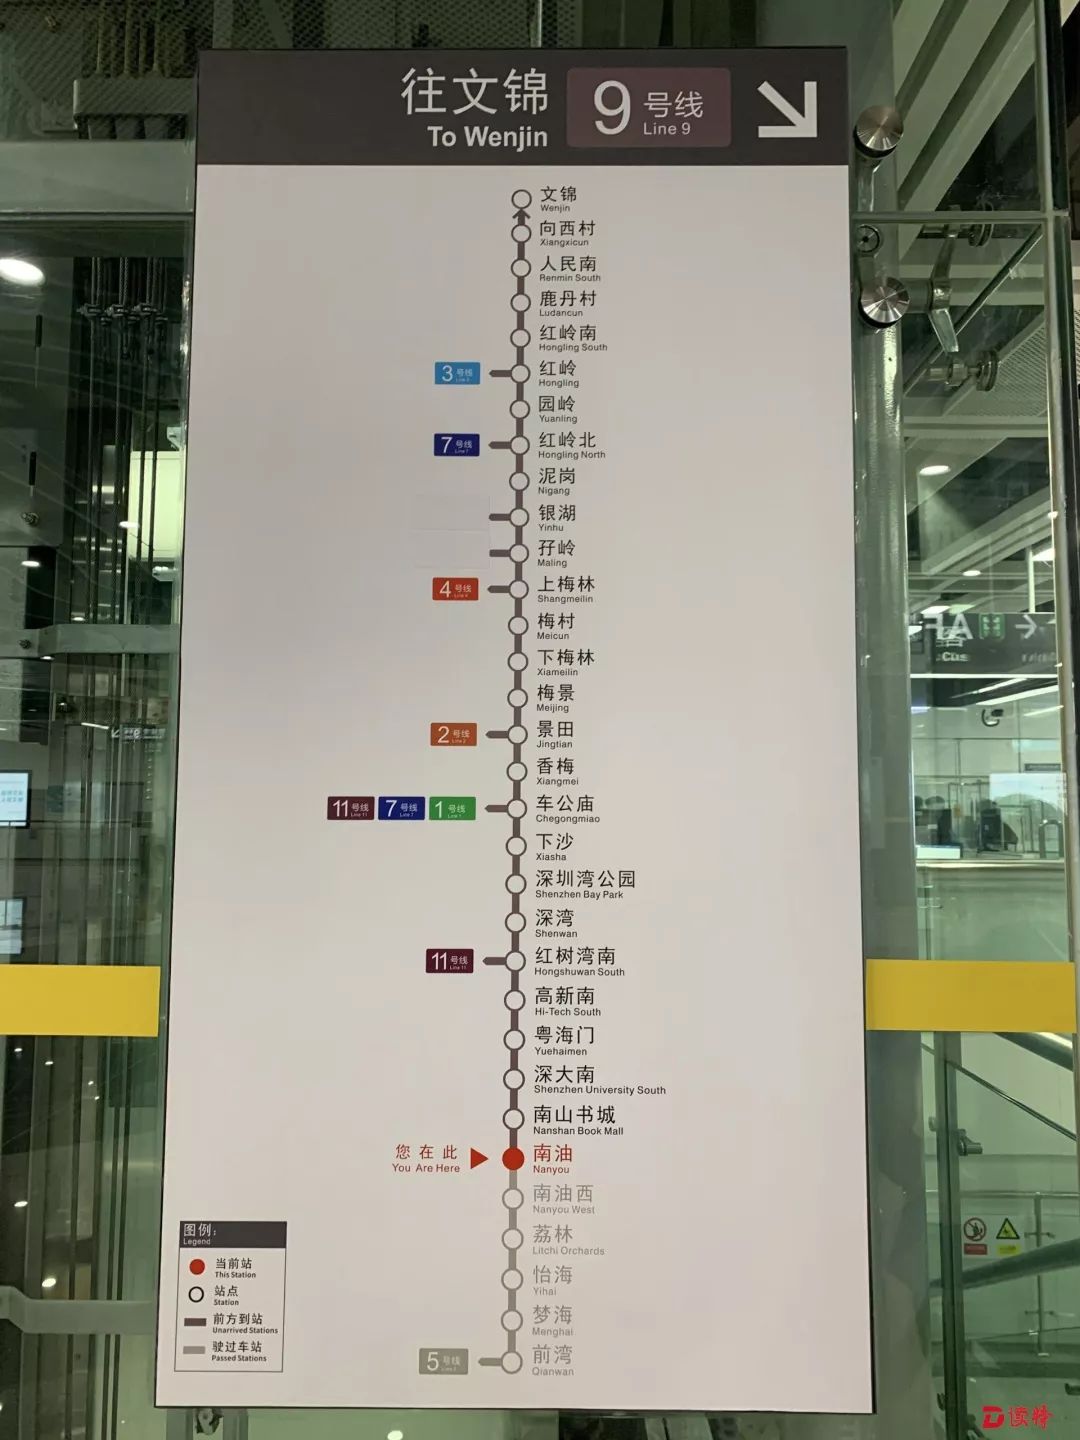 深圳地铁9号线 时间表图片